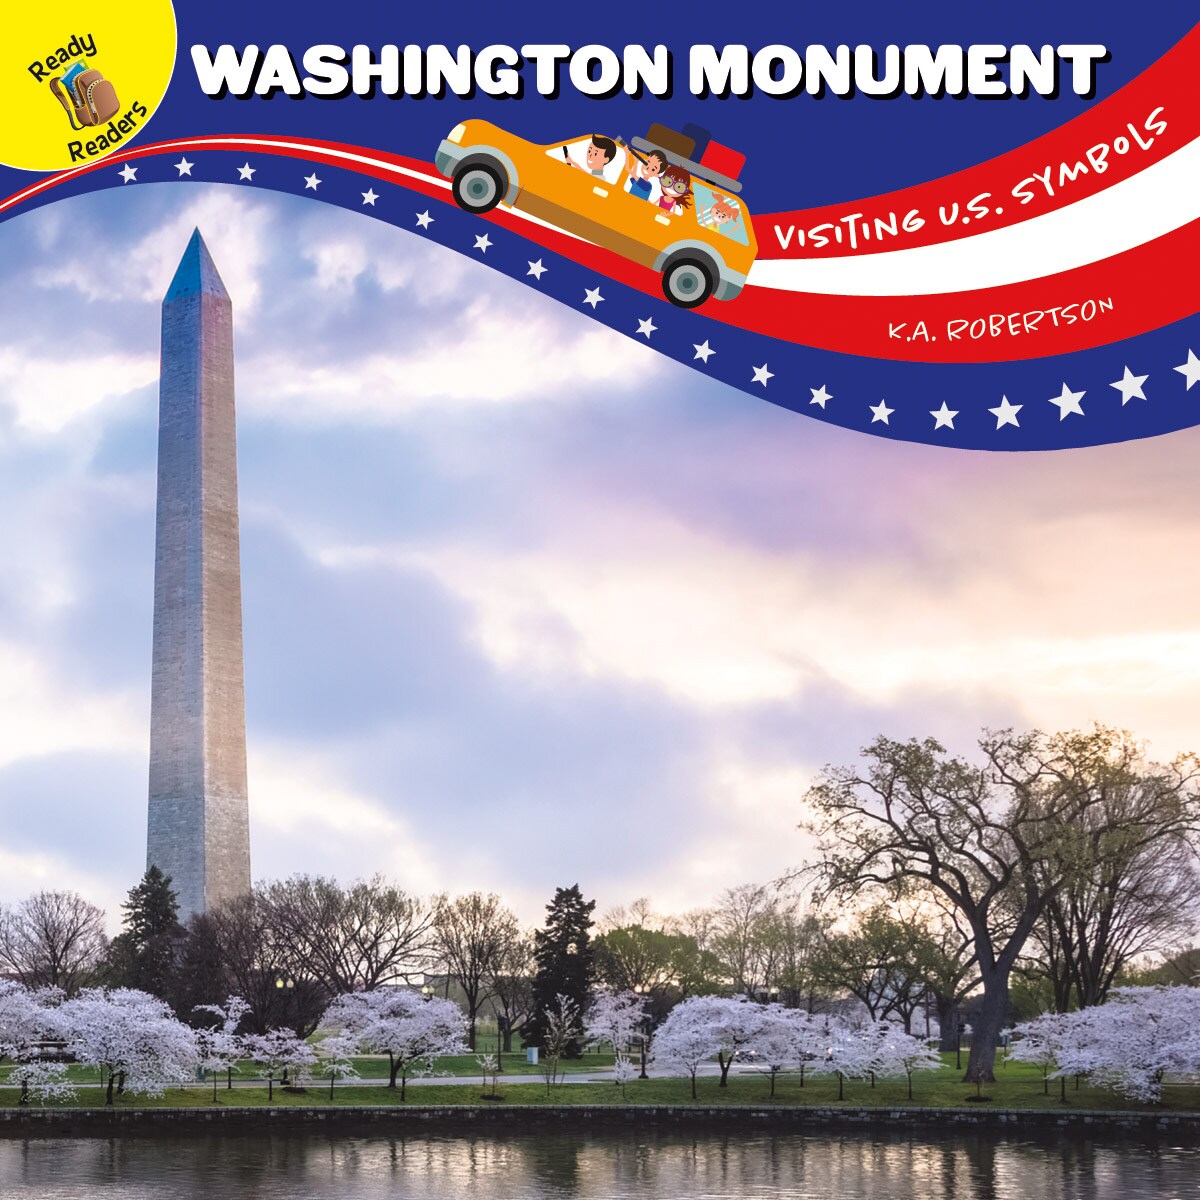 Rourke Educational Media Visiting U.S. Symbols Washington Monument